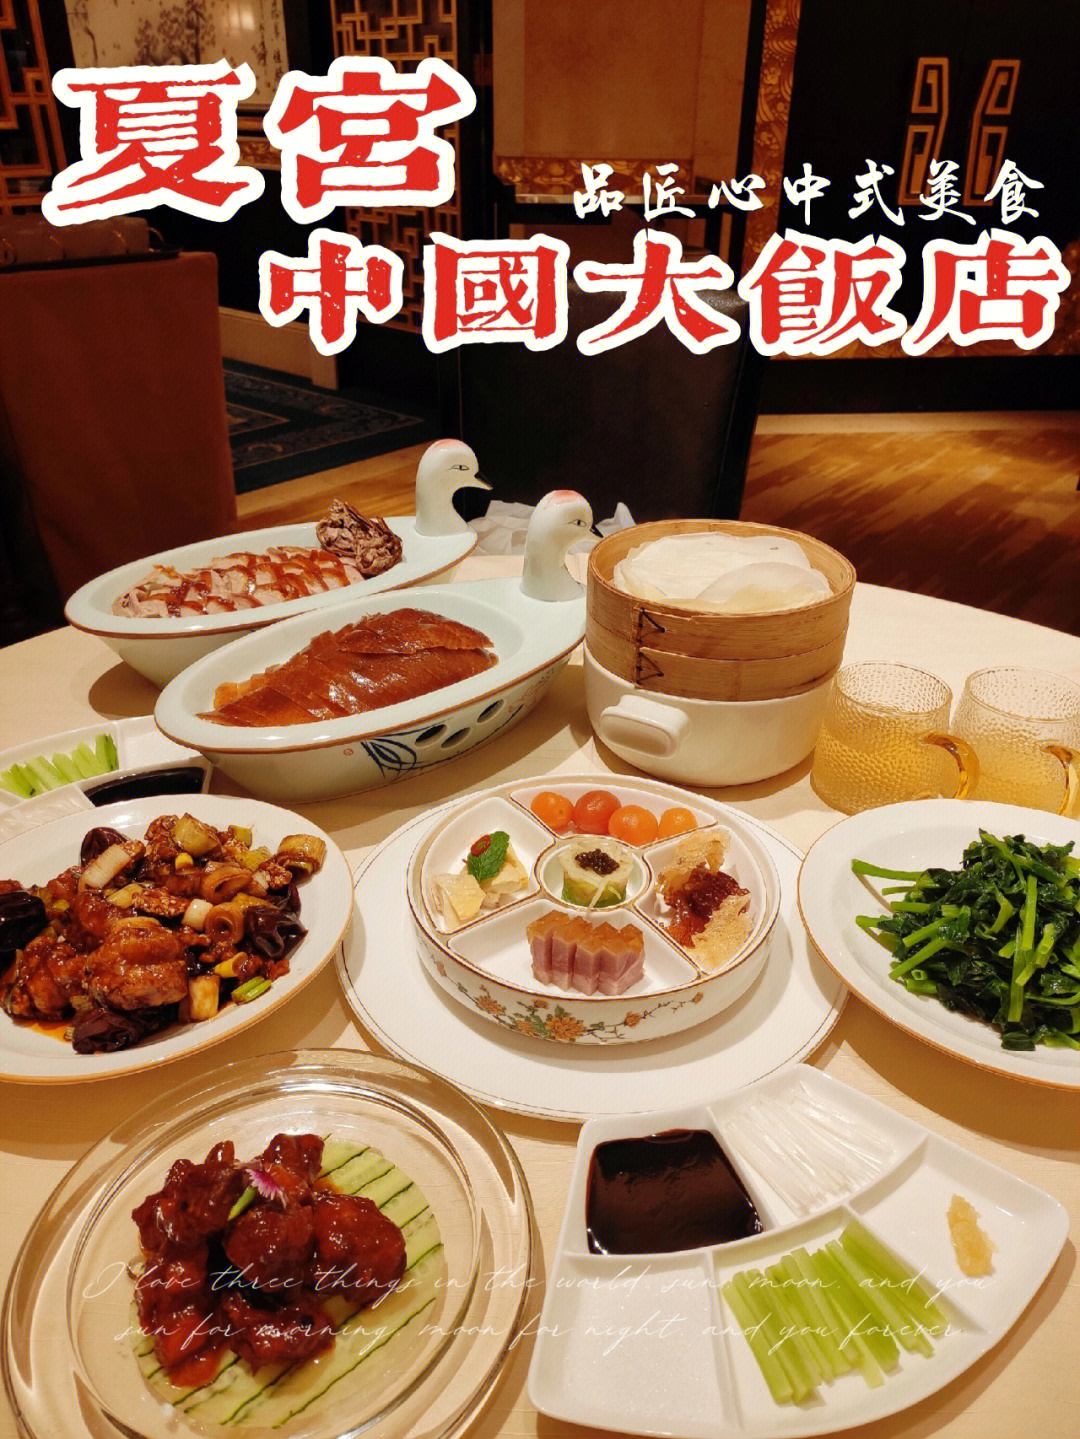 地处北京中央商务区cbd的北京中国大饭店里,有一家集粤,淮,京三大菜系